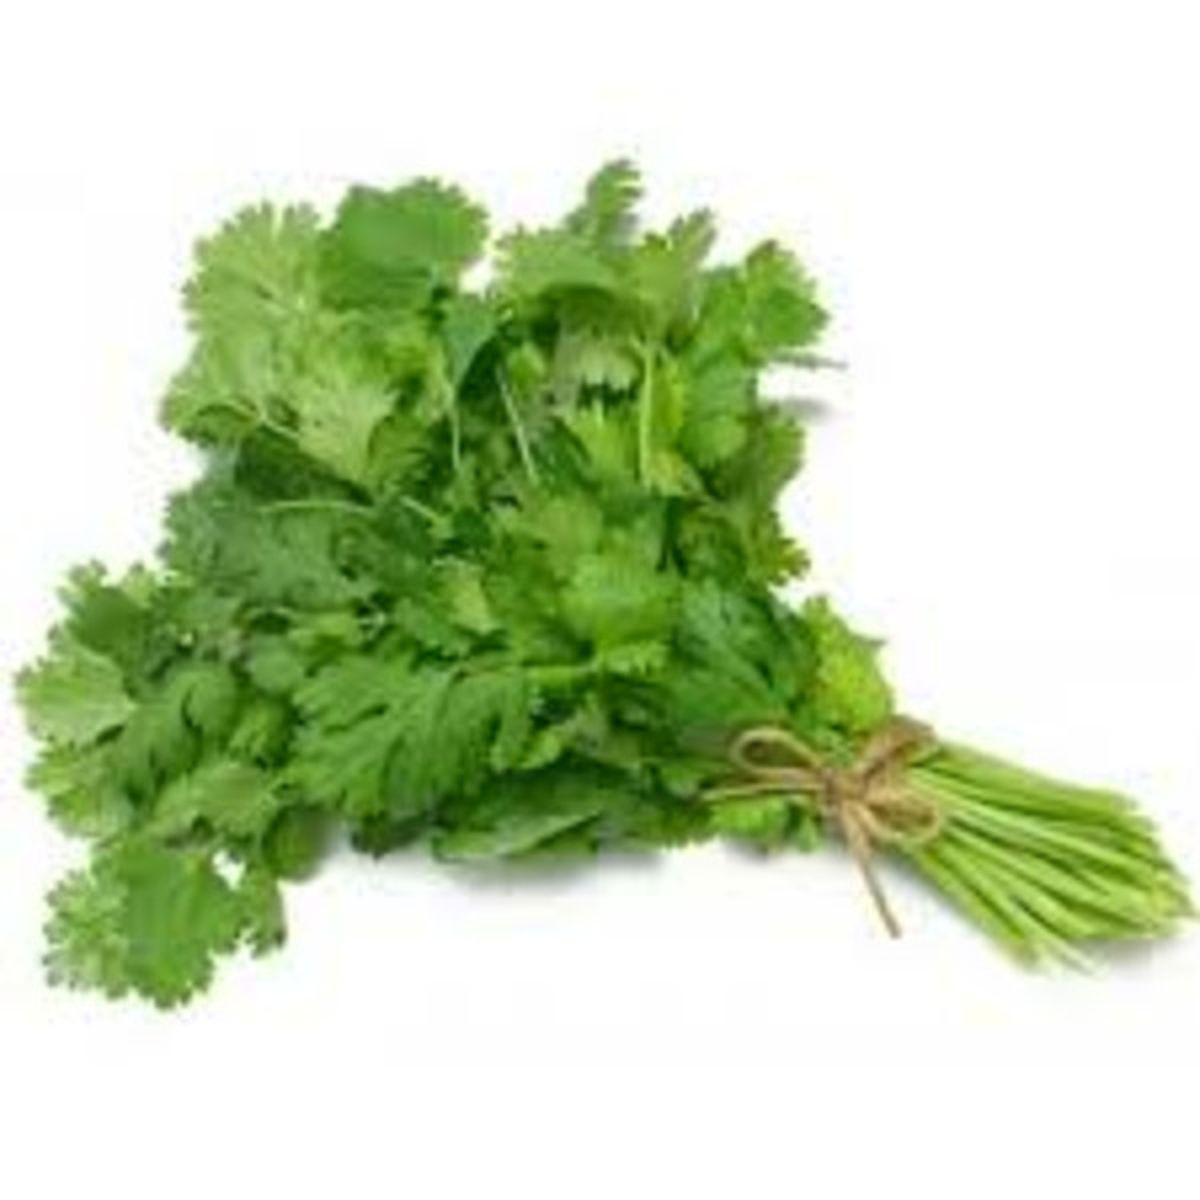 of cilantro